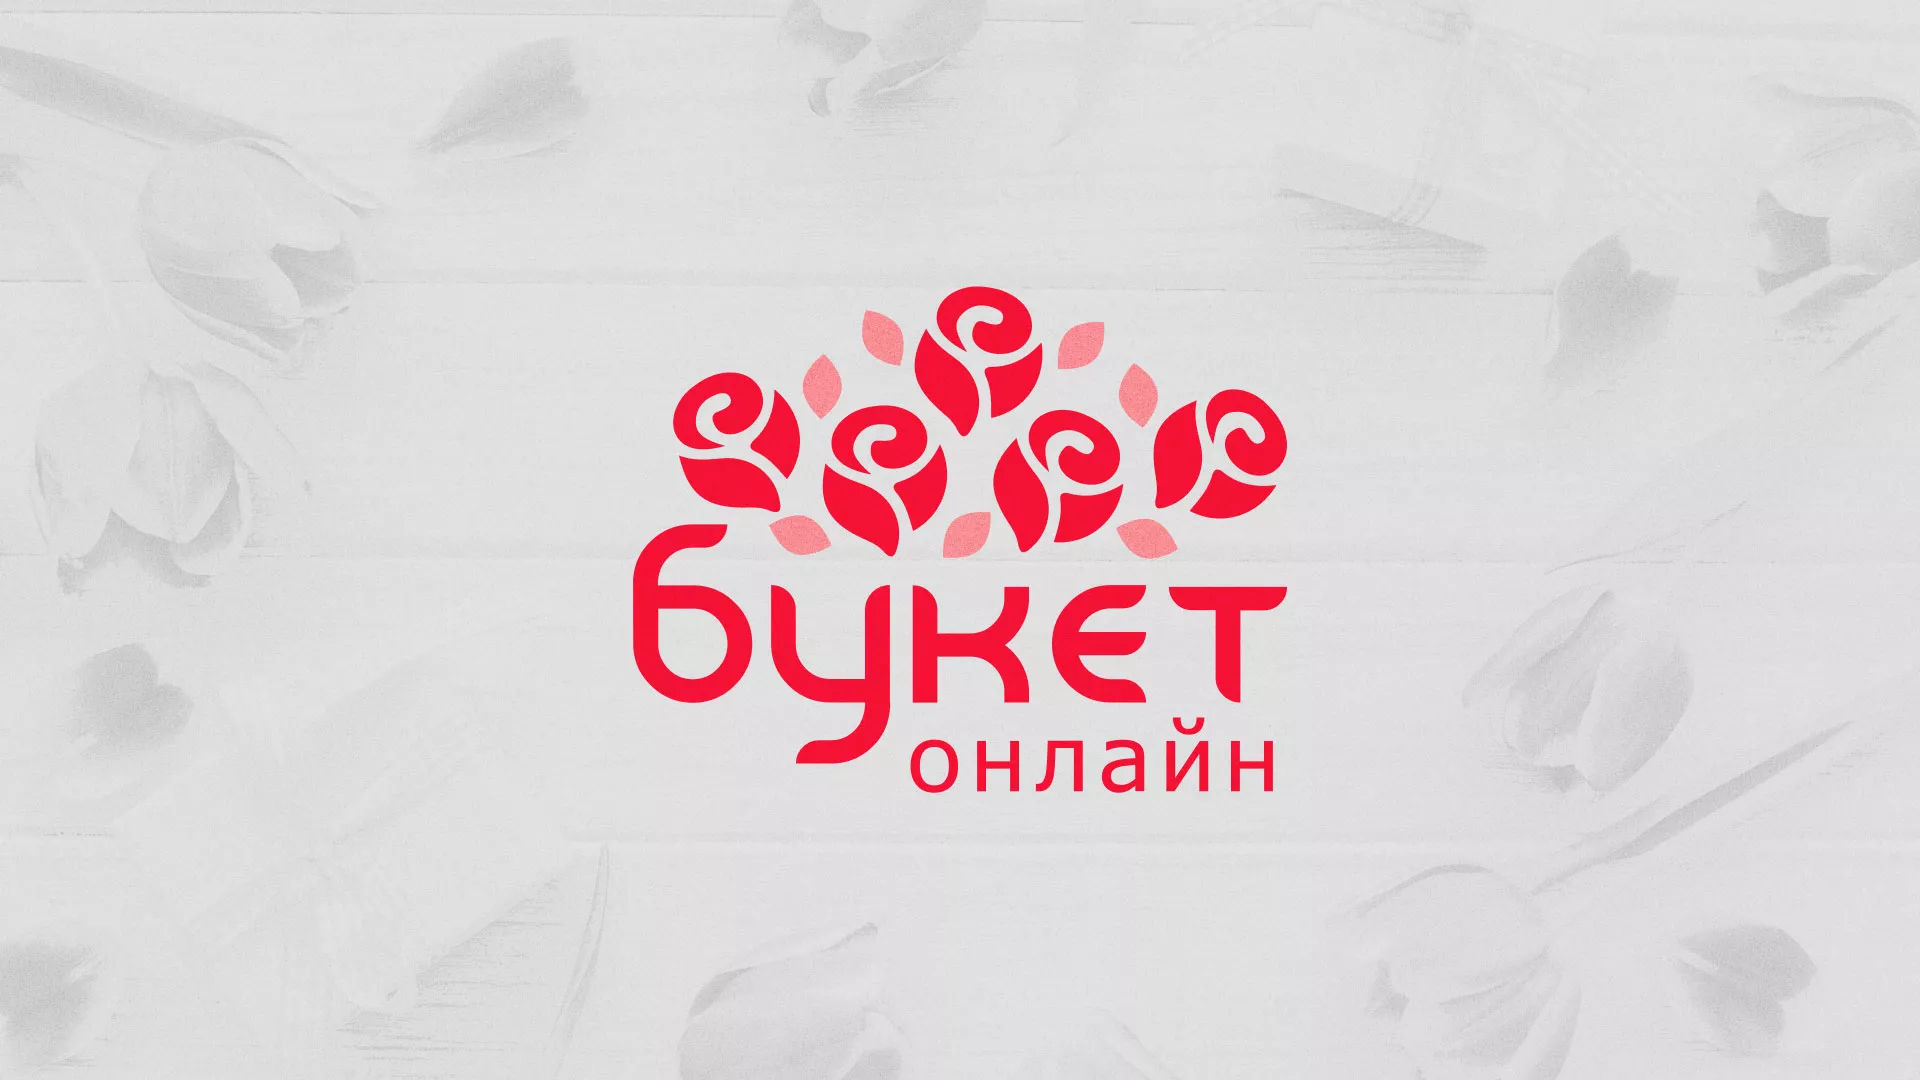 Создание интернет-магазина «Букет-онлайн» по цветам в Красноярске